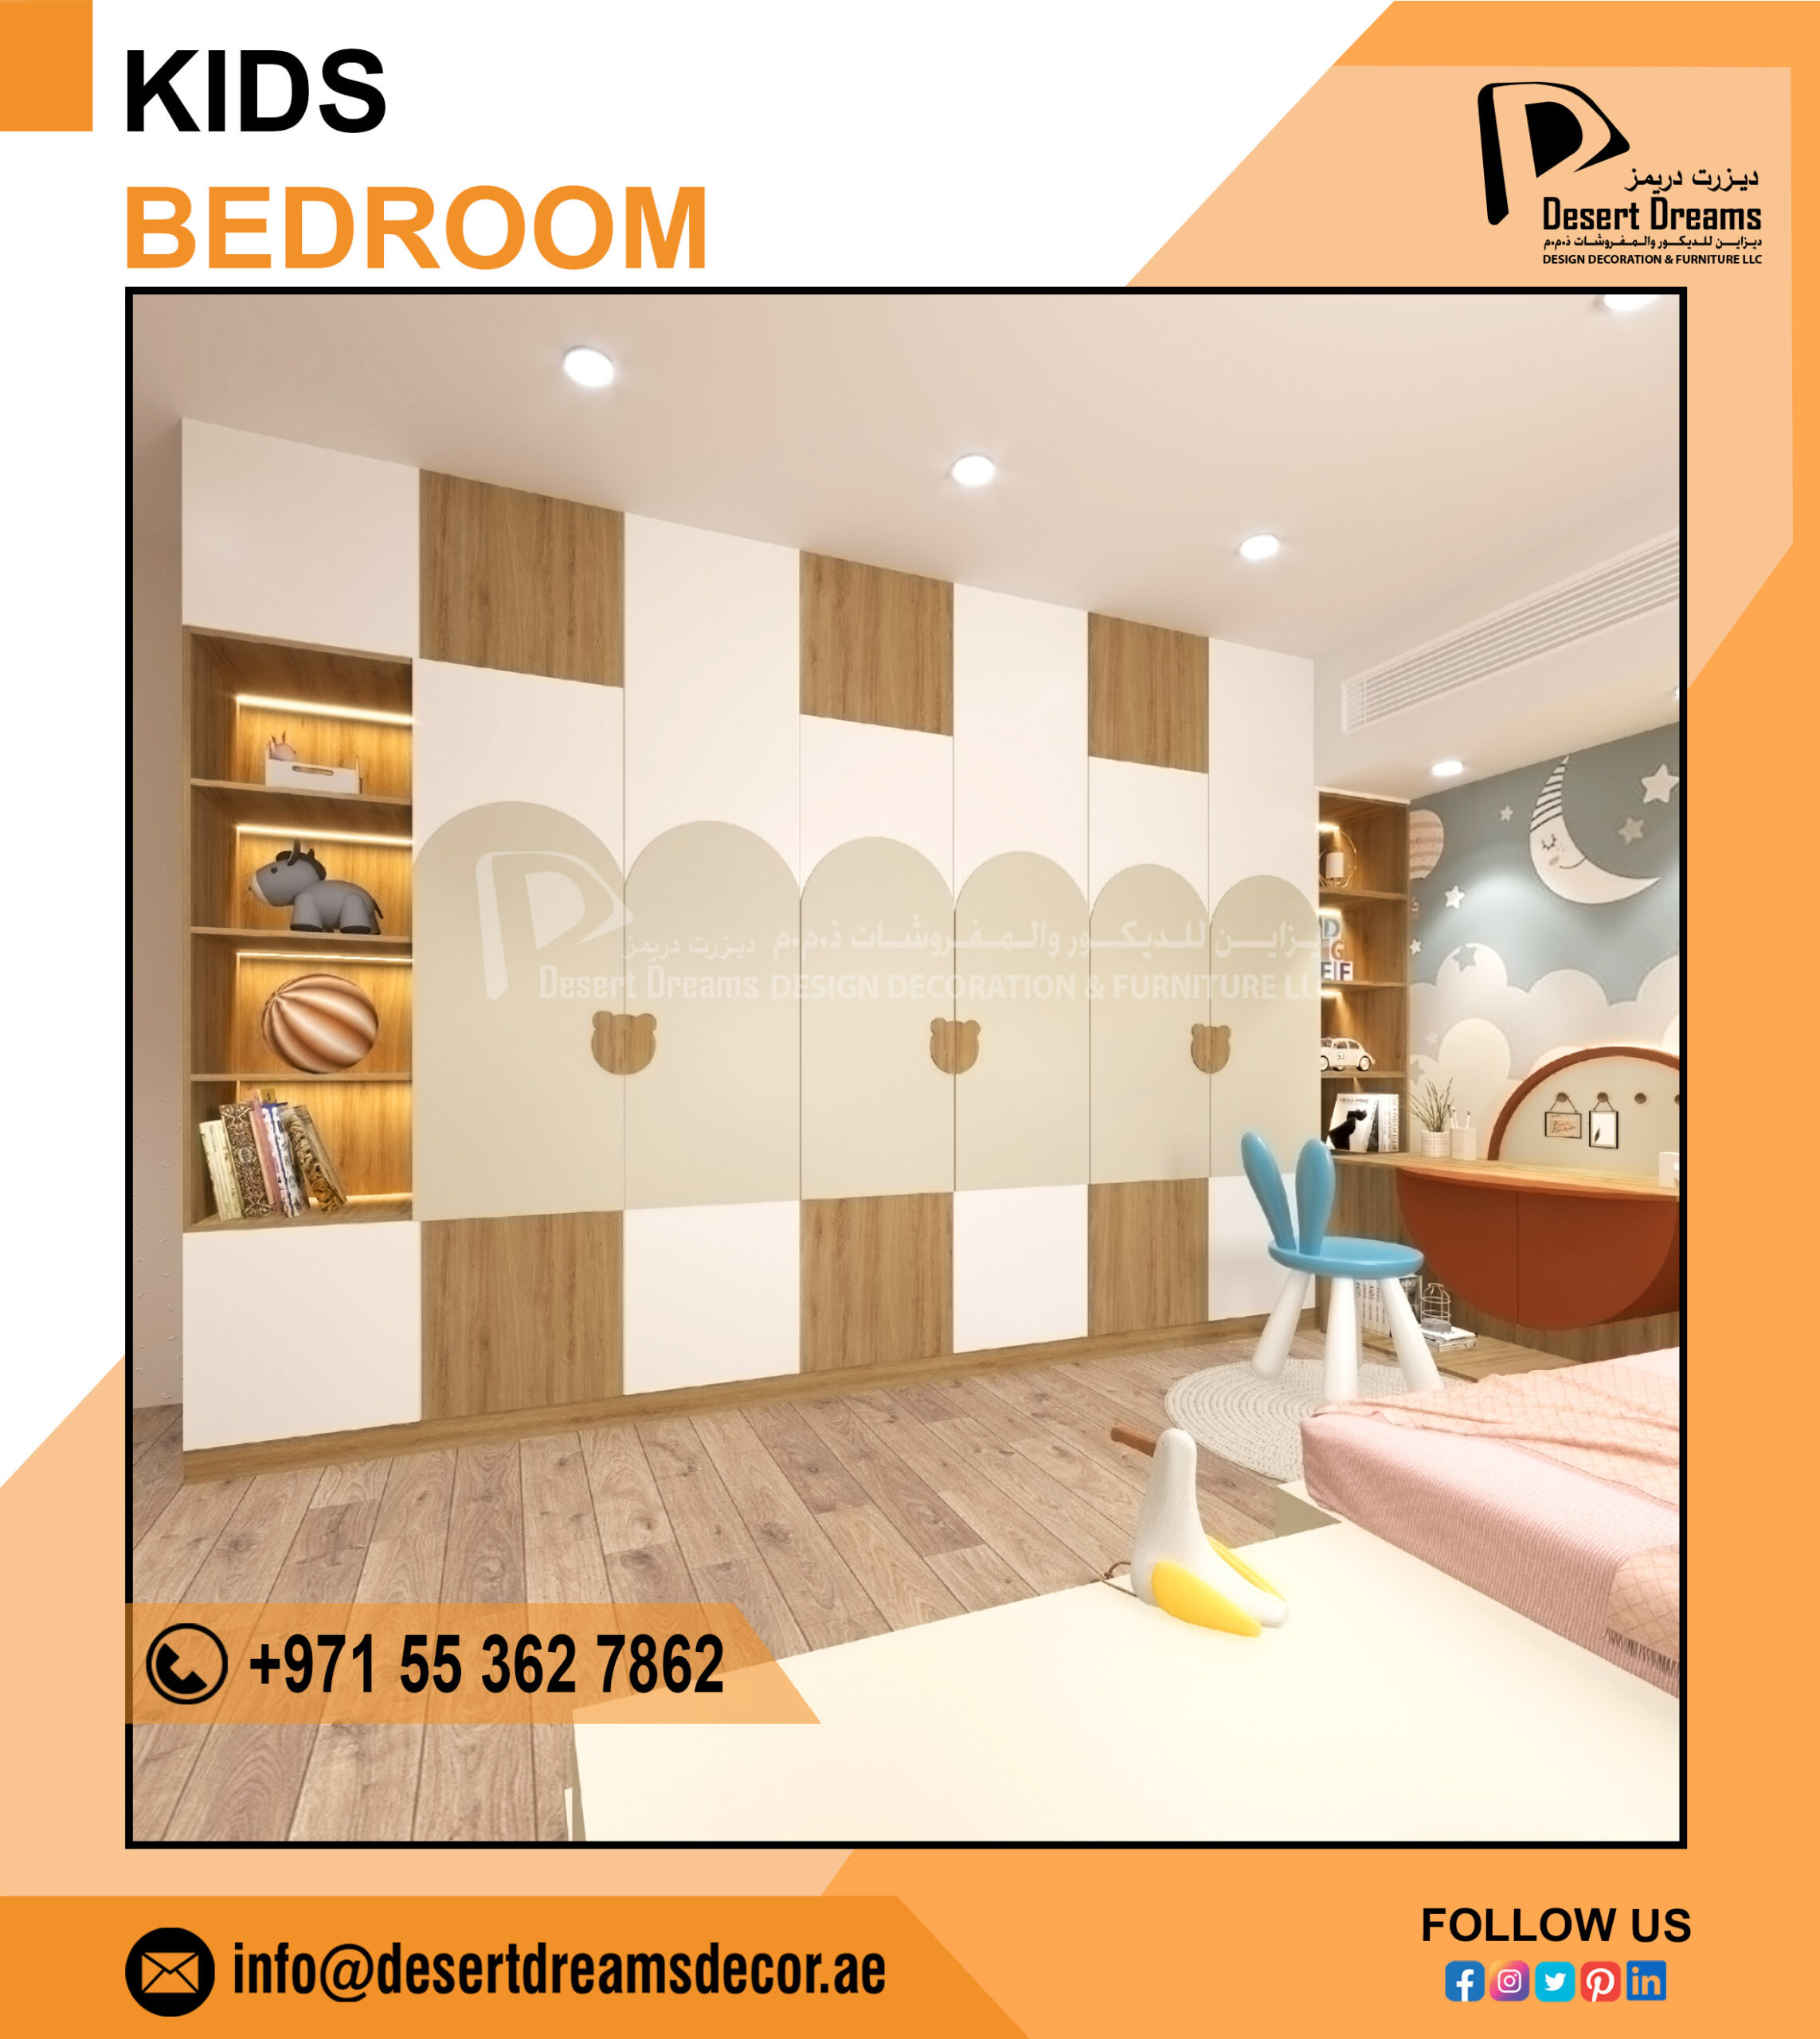 Kids Bedroom Design Uae_Dubai_Abu Dhabi (1).jpg